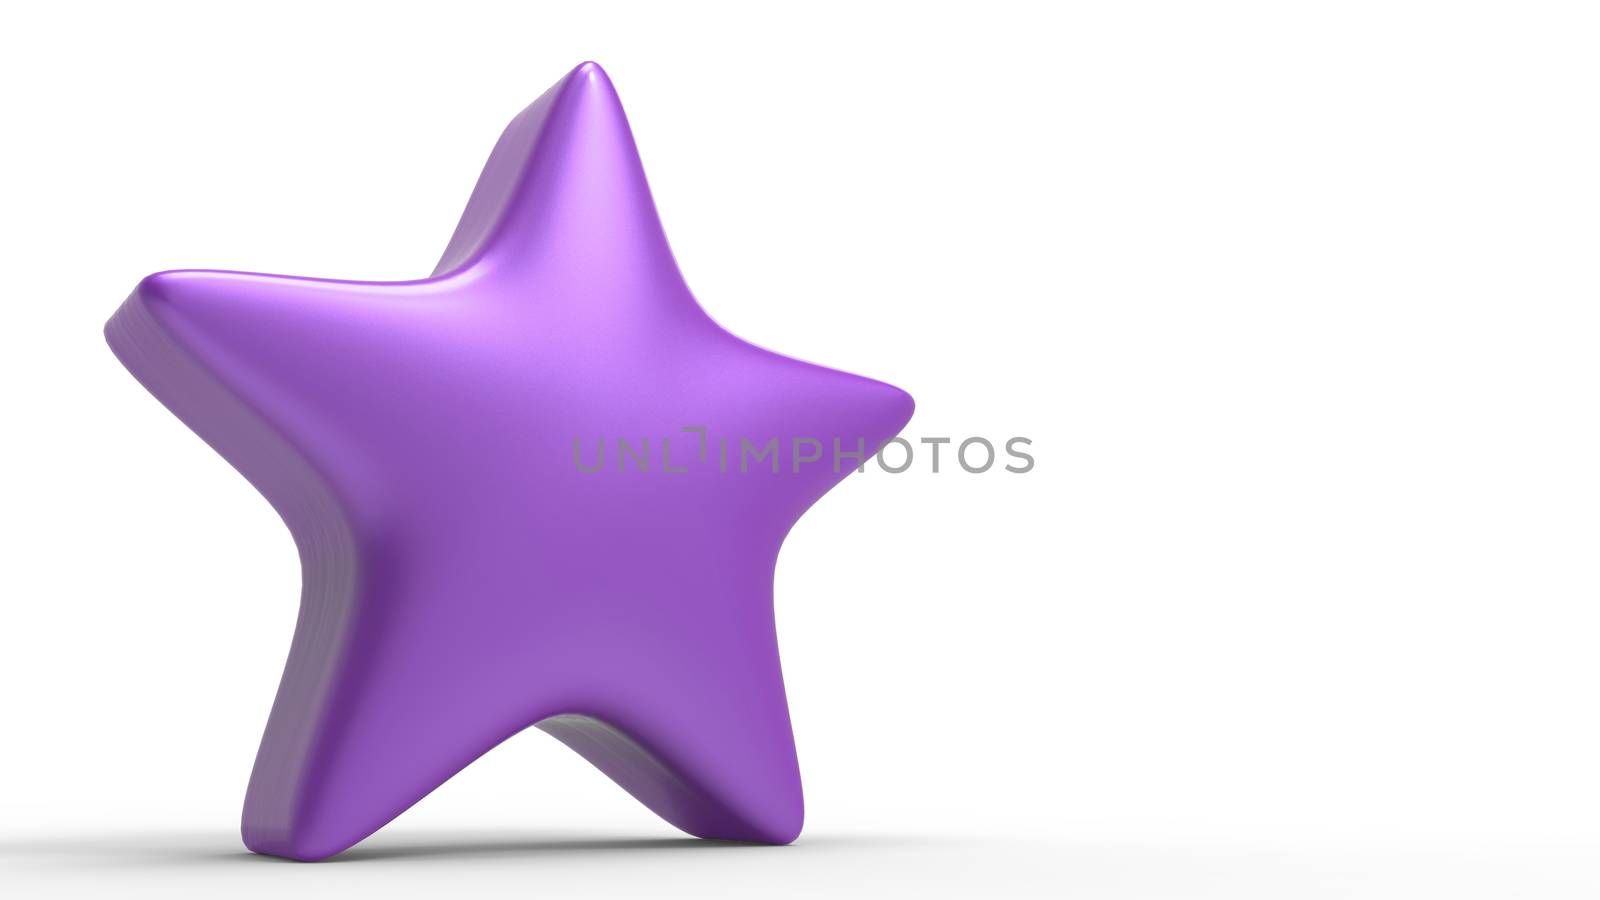 3d violet star on color background. Render and illustration of golden star for premium